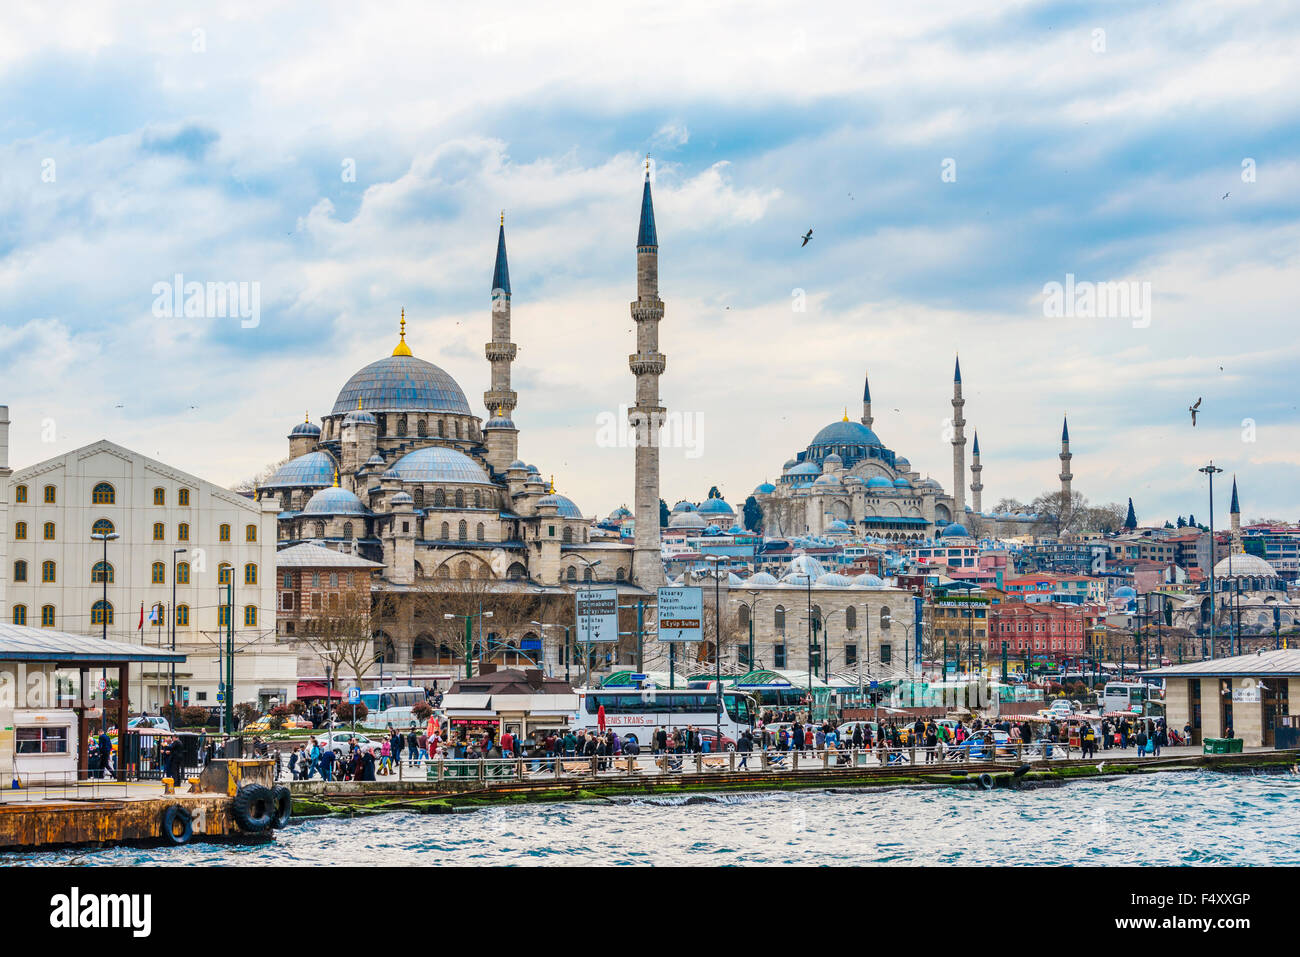 Поехать в стамбул. Новая мечеть в Стамбуле. Стамбул сейчас. Стамбул сейчас фото. Снег в Стамбуле.